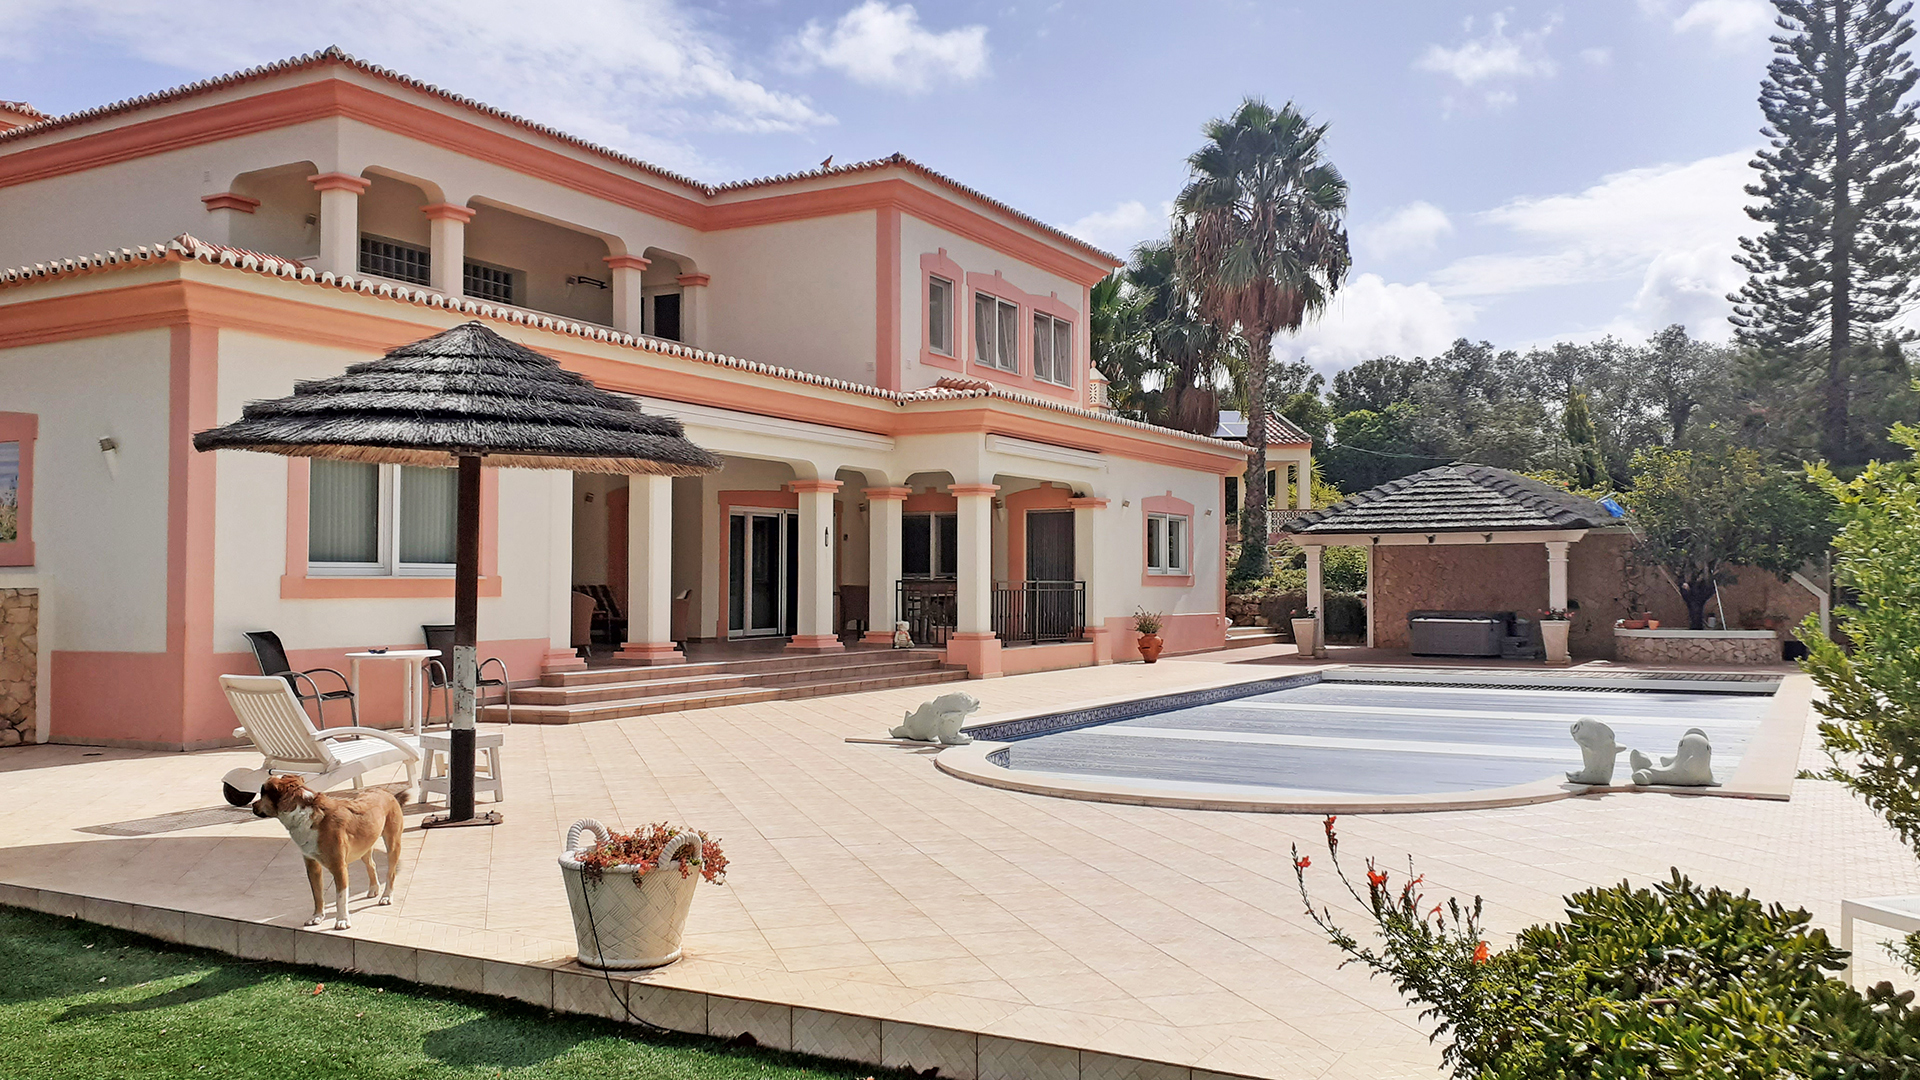 5 SZ Villa Nebengebäude und großem Pool in Monte Judeu, West Algarve | LG1701 Diese luxuriöse Villa mit 5 Schlafzimmern wurde 2008 gebaut und befindet sich in der Urbanisation Monte Judeu, nördlich von Alvor. Das Anwesen ist wunderschön auf 2 Ebenen gestaltet und befindet sich in einer Sackgasse. Die Villa verfügt über ein 5150 m² großes Grundstück, einen Pool und ein großes, separates Nebengebäude.  In der Nähe von Golfplatz und Stränden.